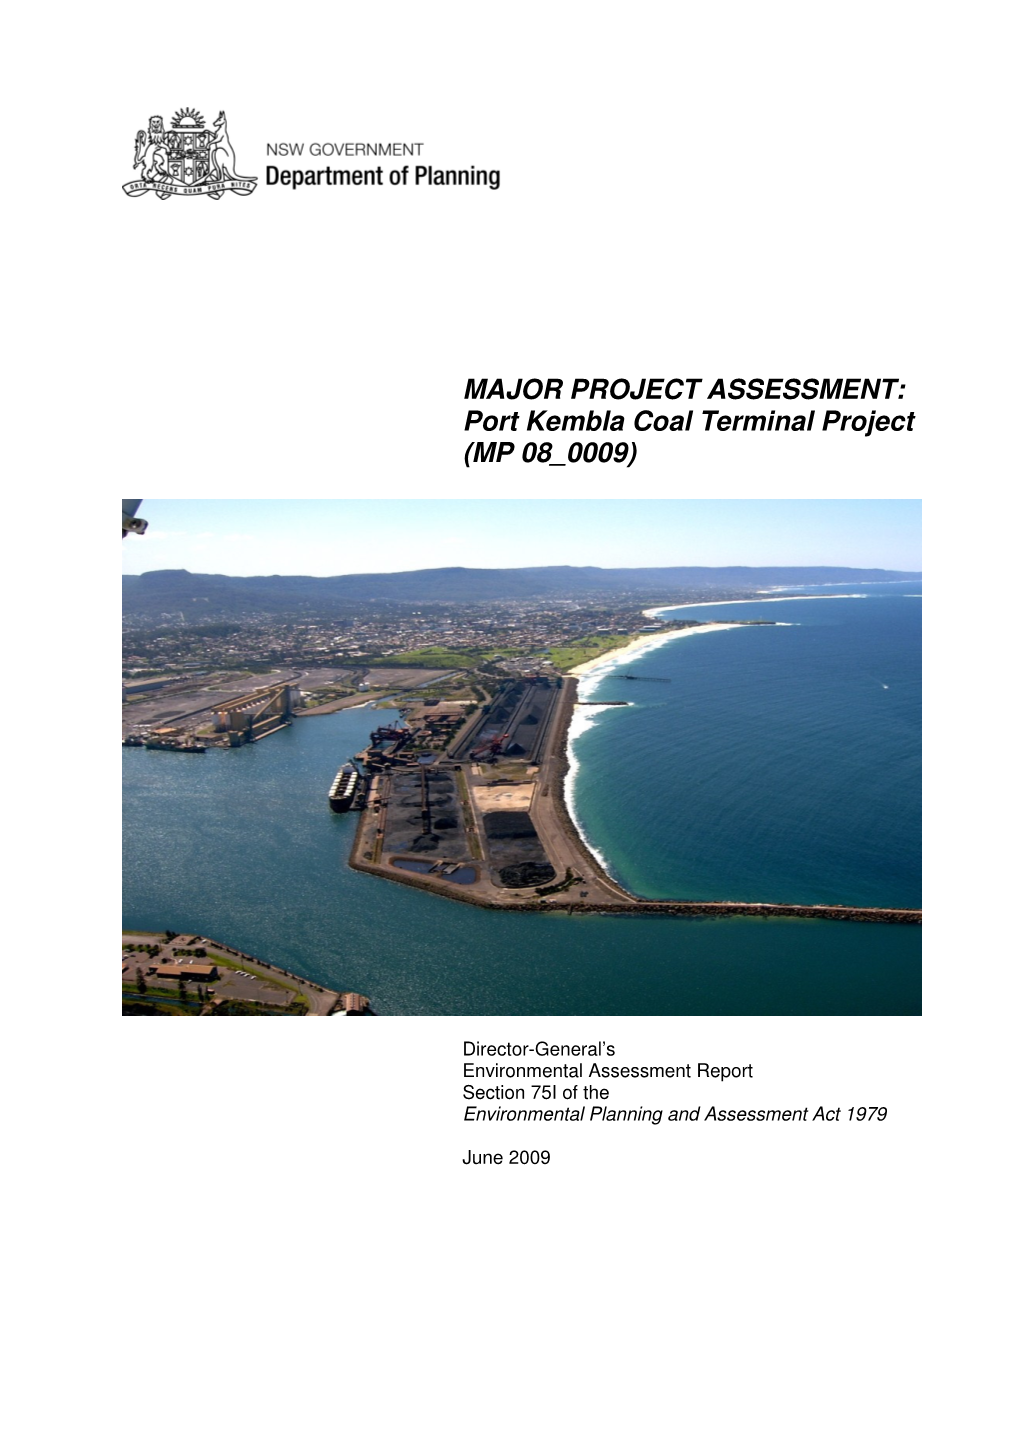 Port Kembla Coal Terminal Project (MP 08 0009)